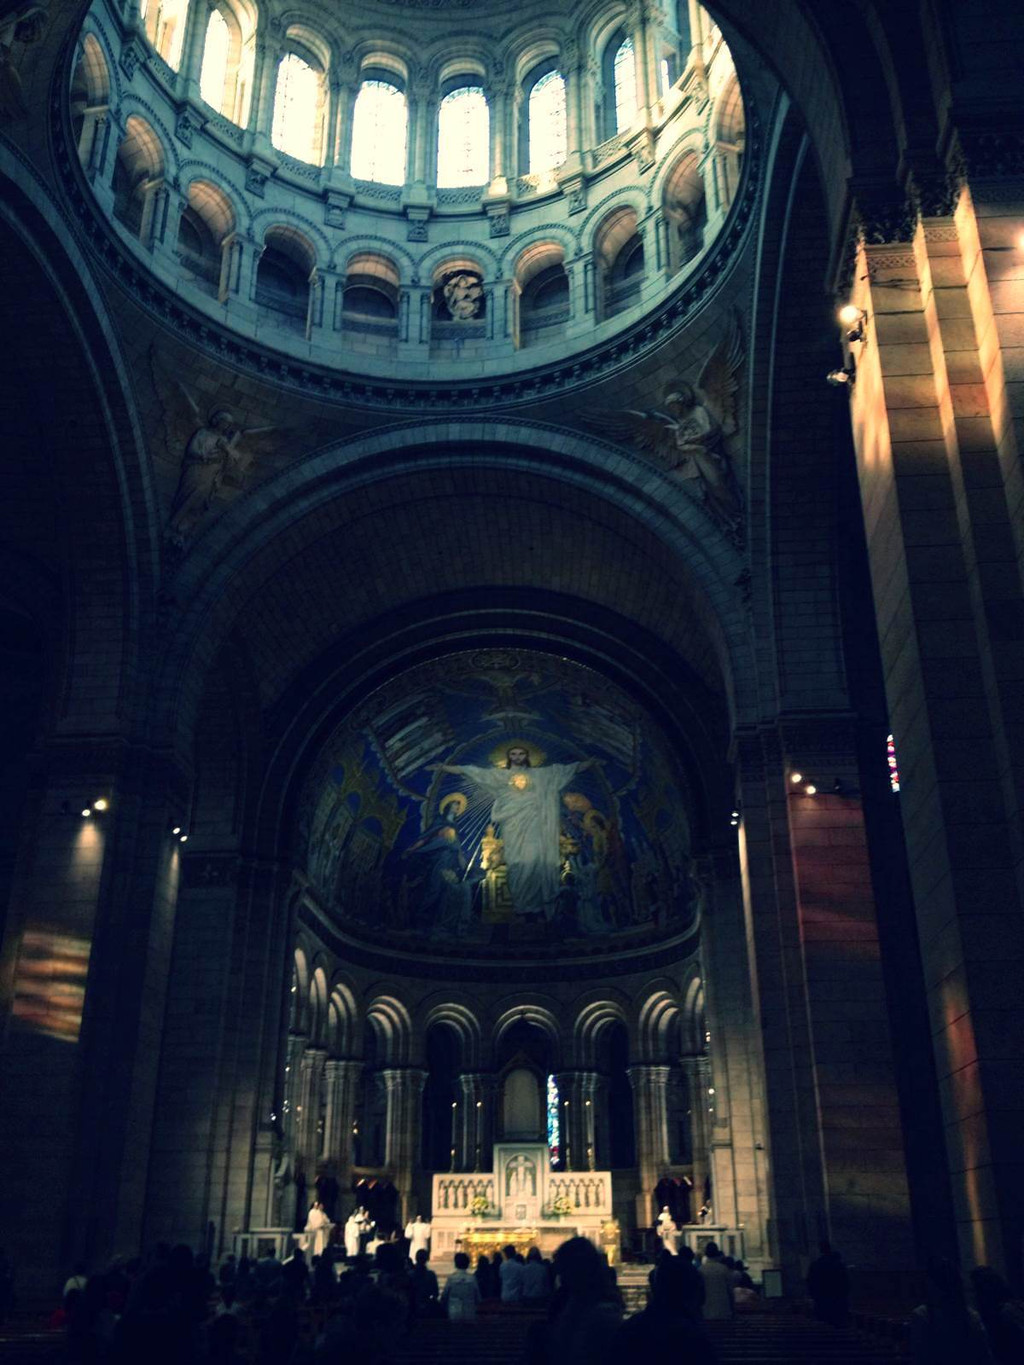 尤其是配合教堂的光影,画面最亮处为祭坛,耶稣像